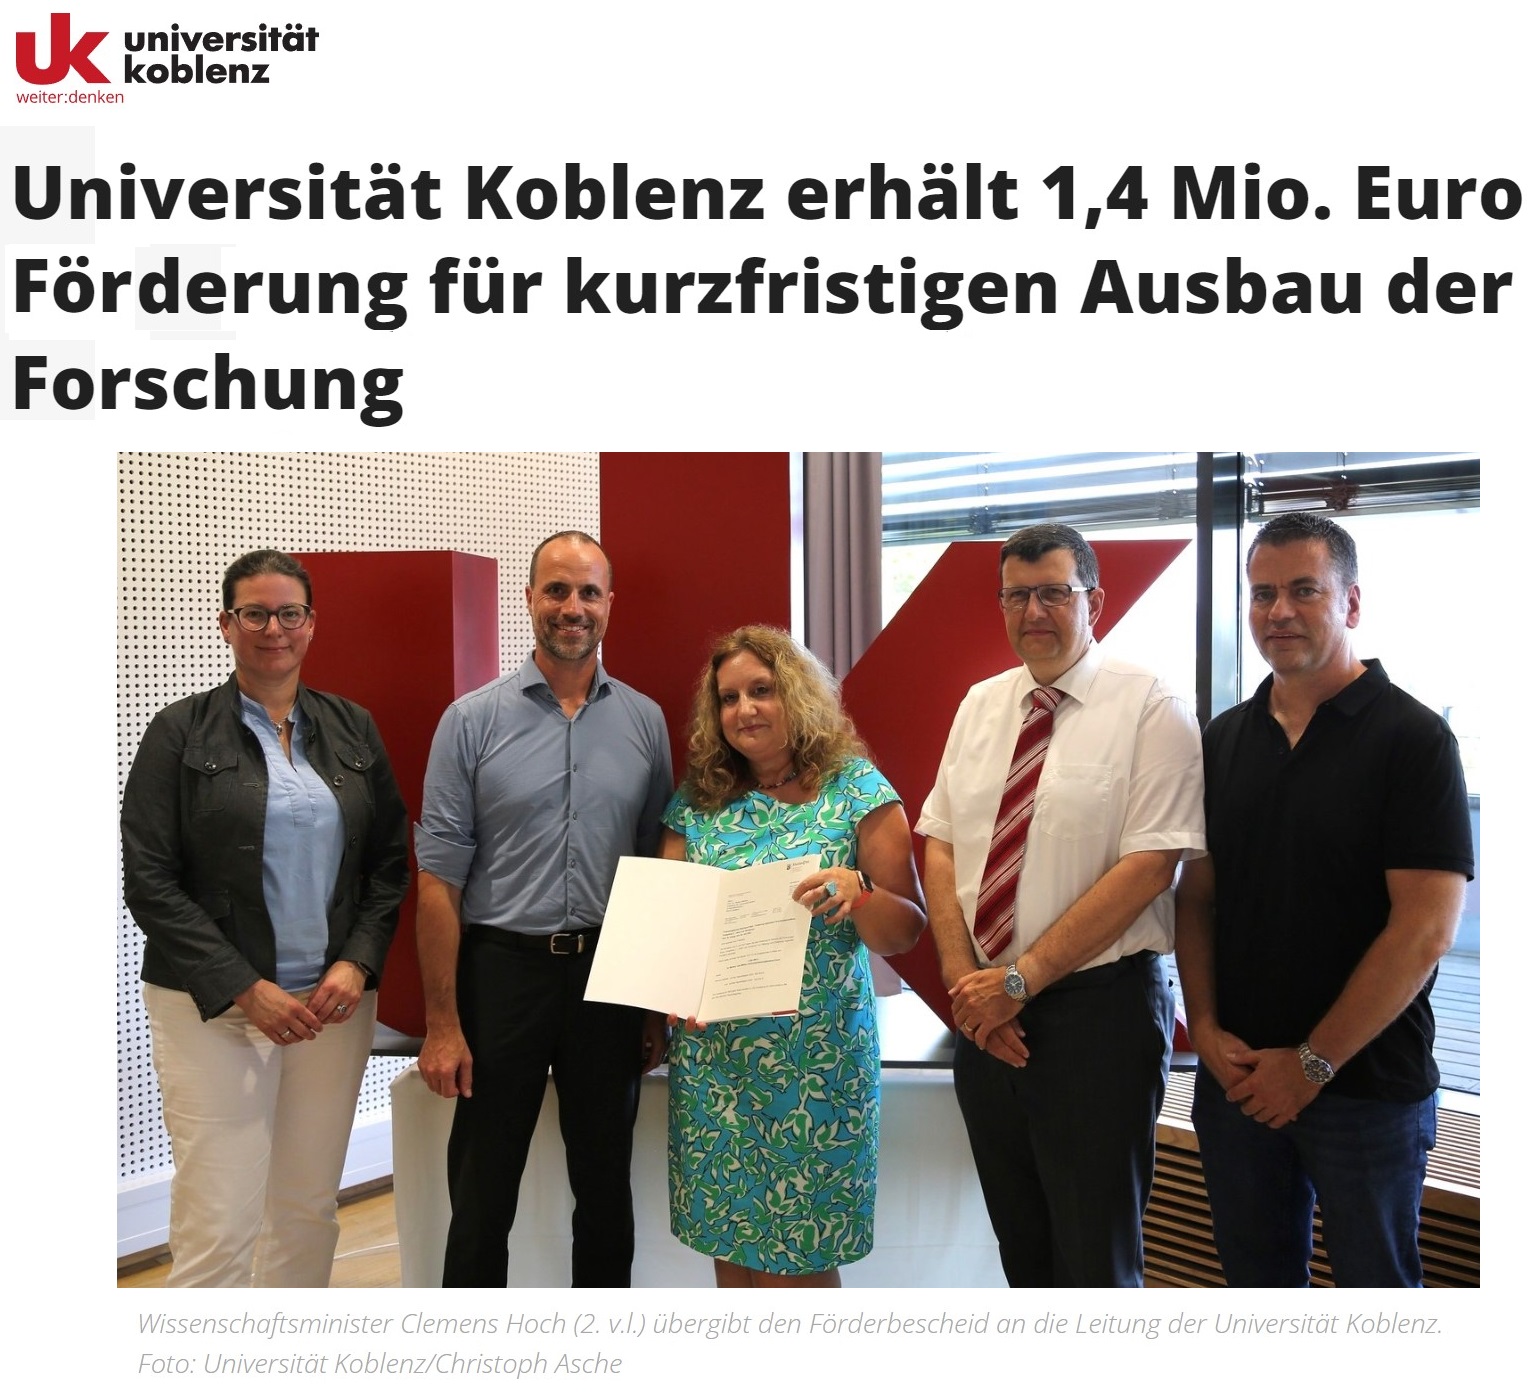 Universität Koblenz erhält 1,4 Mio. Euro Förderung für kurzfristigen Ausbau der Forschung